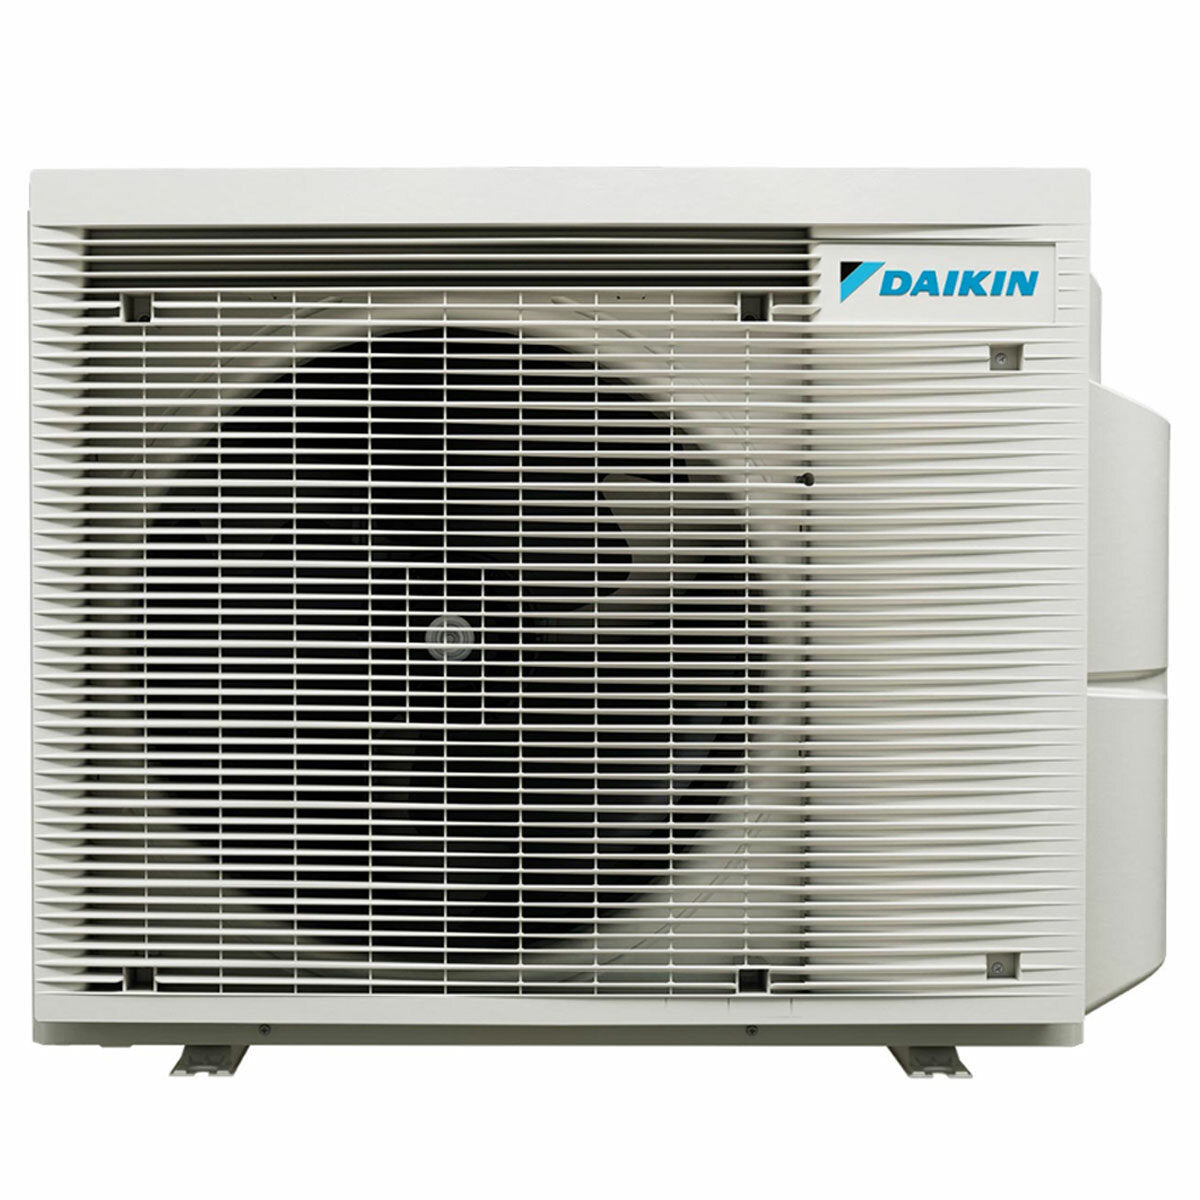 Daikin Emura 3 trial split air conditioner 9000+9000+12000 BTU inverter A+ wifi outdoor unit 6.8 kW Silver